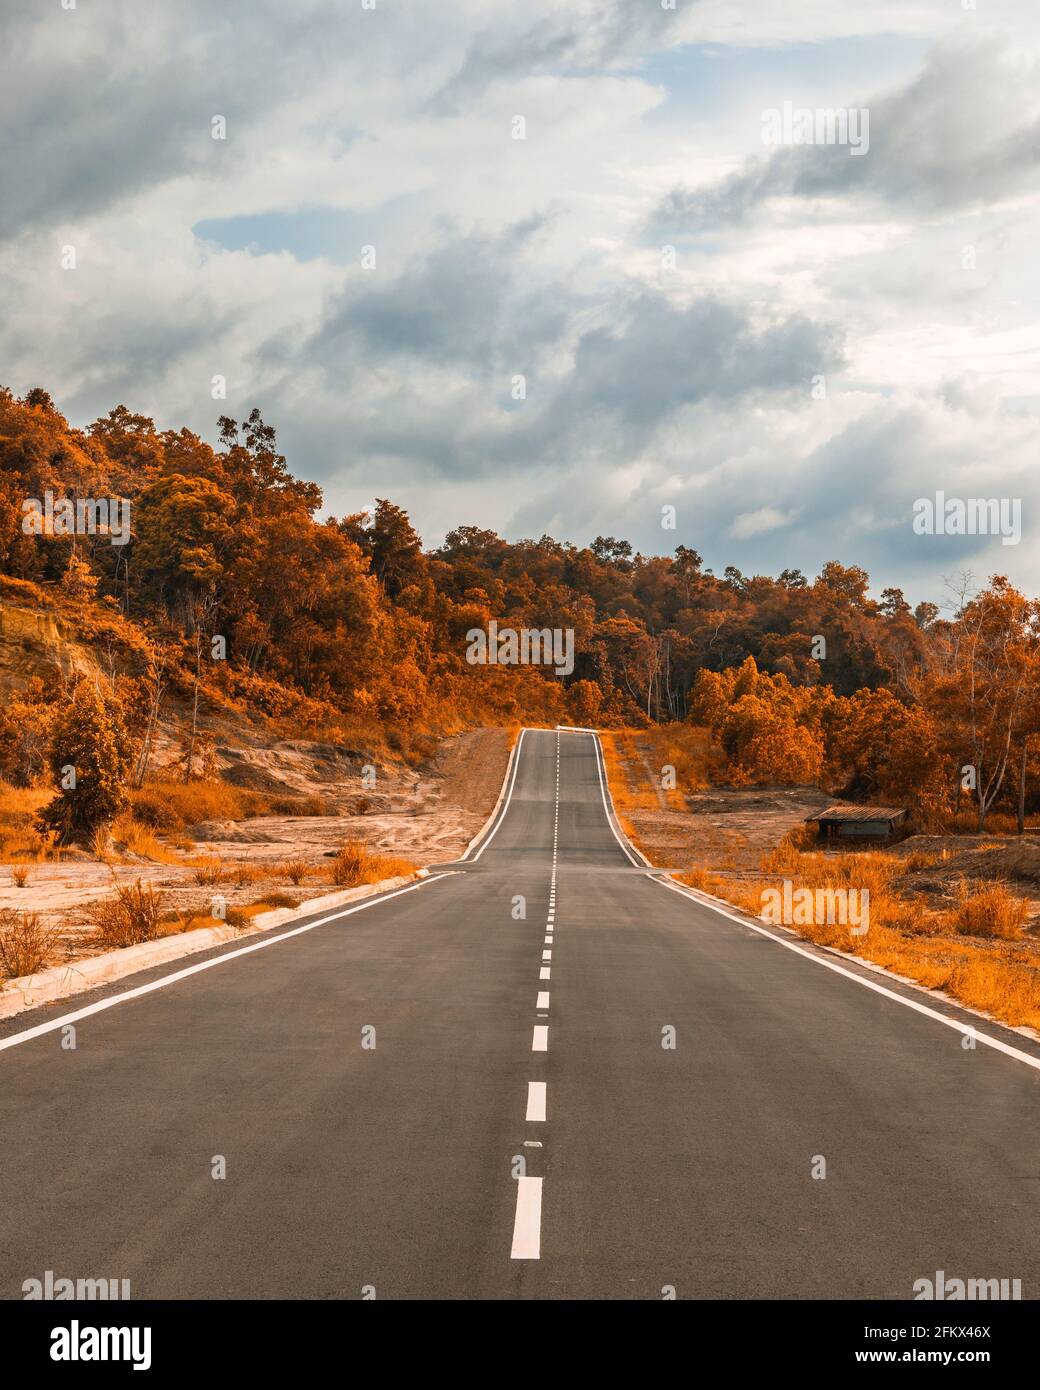 Una carretera bonita y limpia por Telanai en Brunei Darussalam. La imagen se edita para mirar otoño, no hay estaciones en Brunei Foto de stock